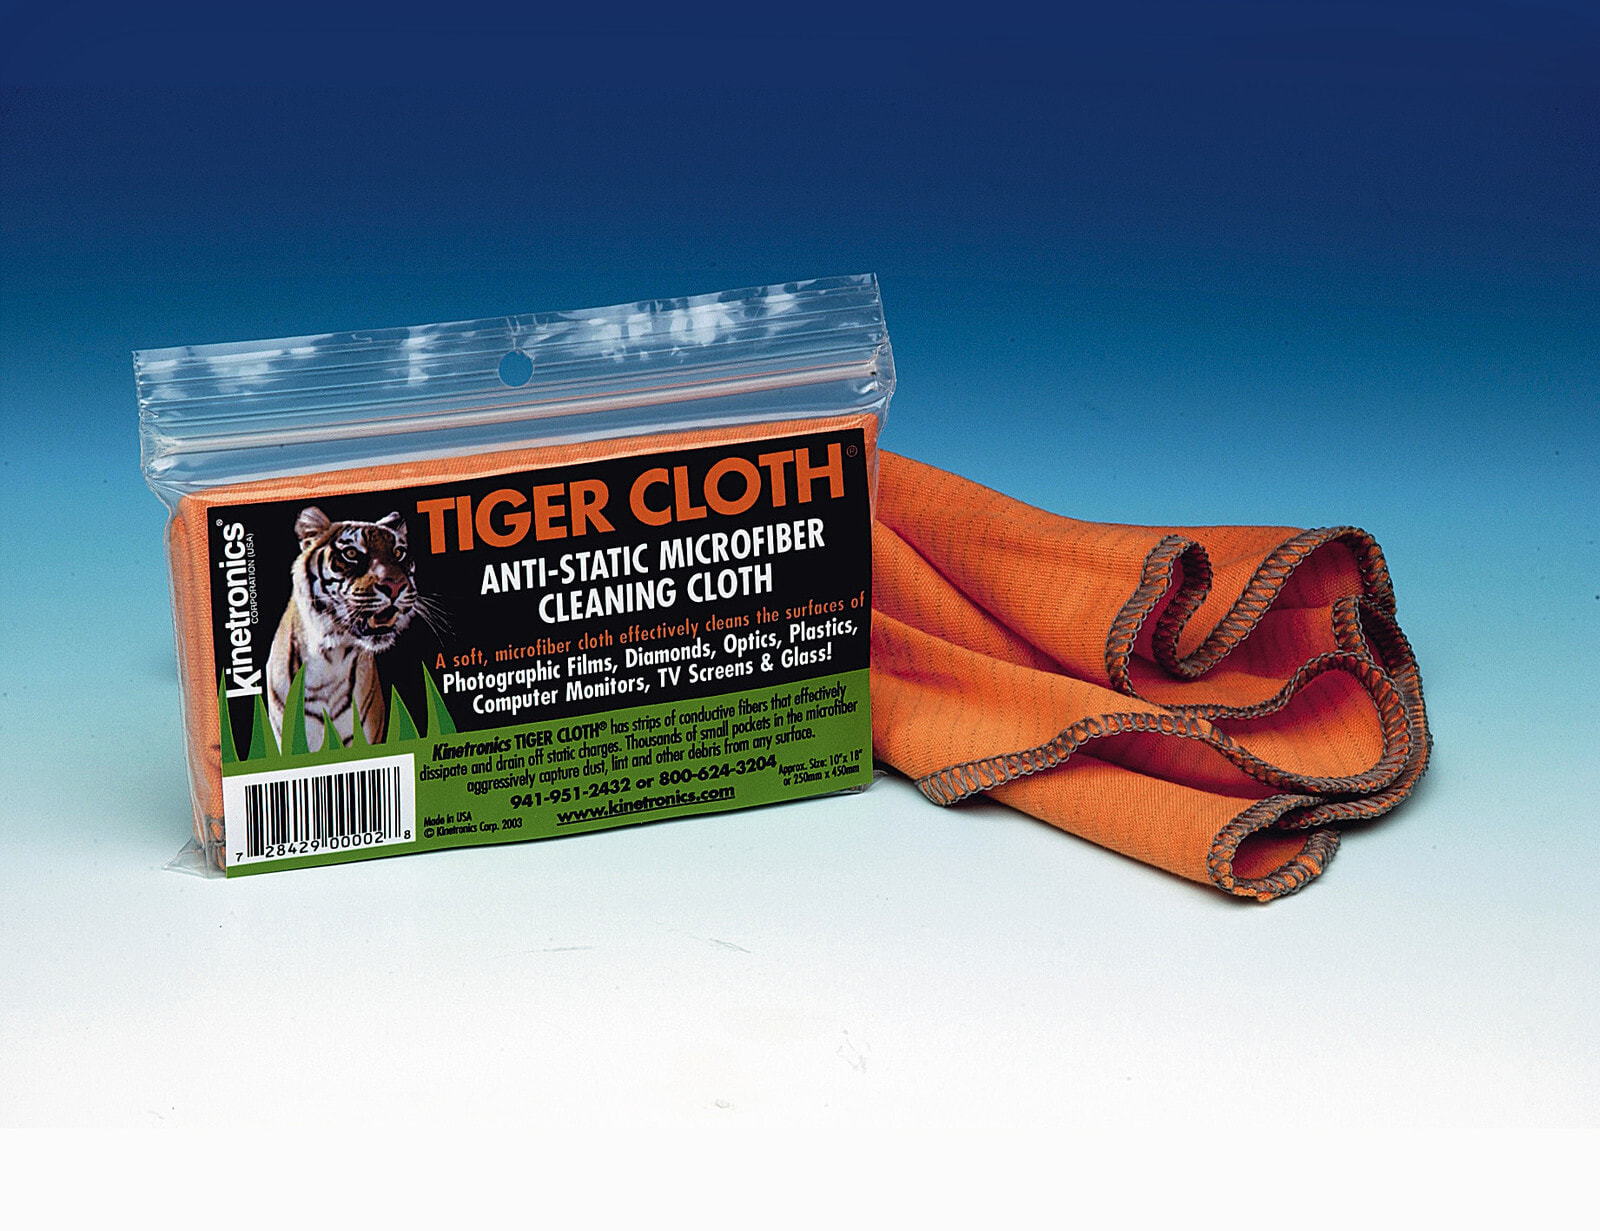 Антистатическая тигровая ткань ASC Kinetronics